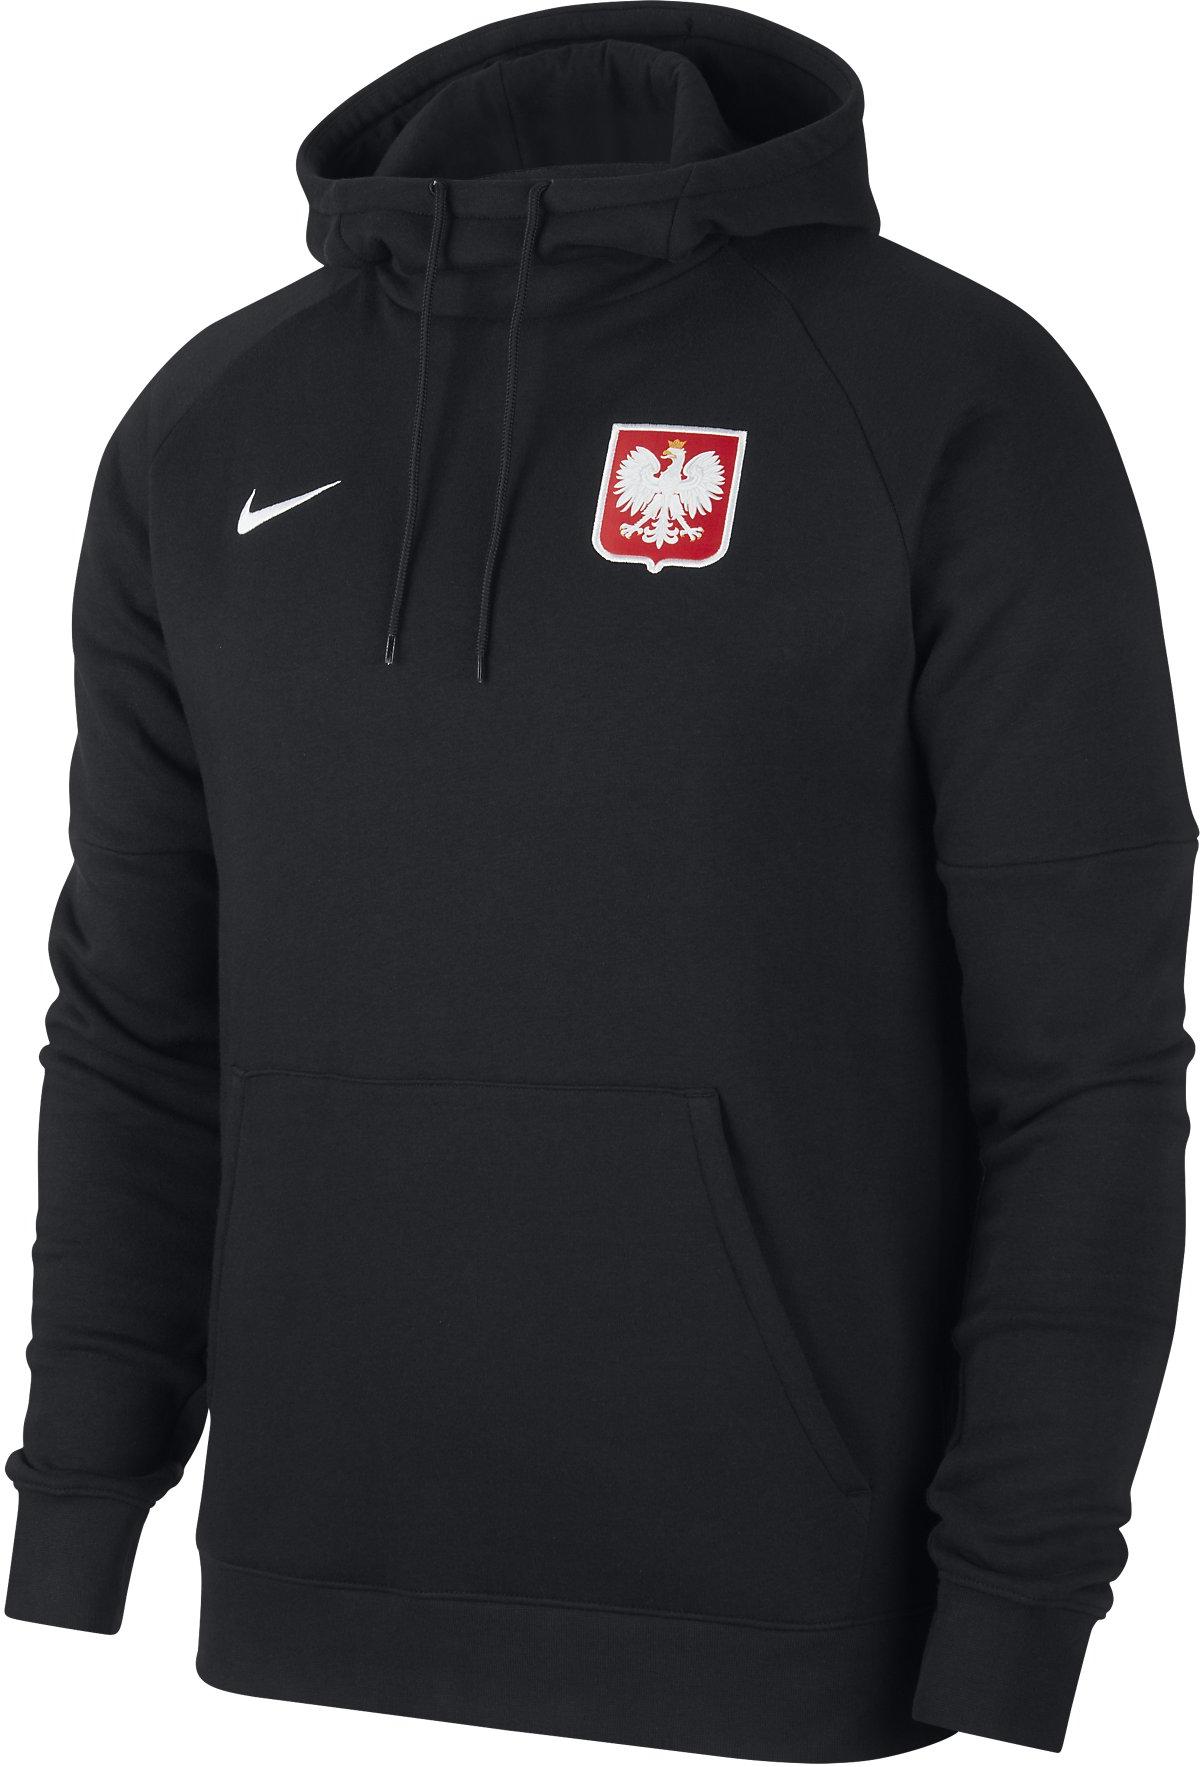 Pánská mikina s kapucí Nike Polsko